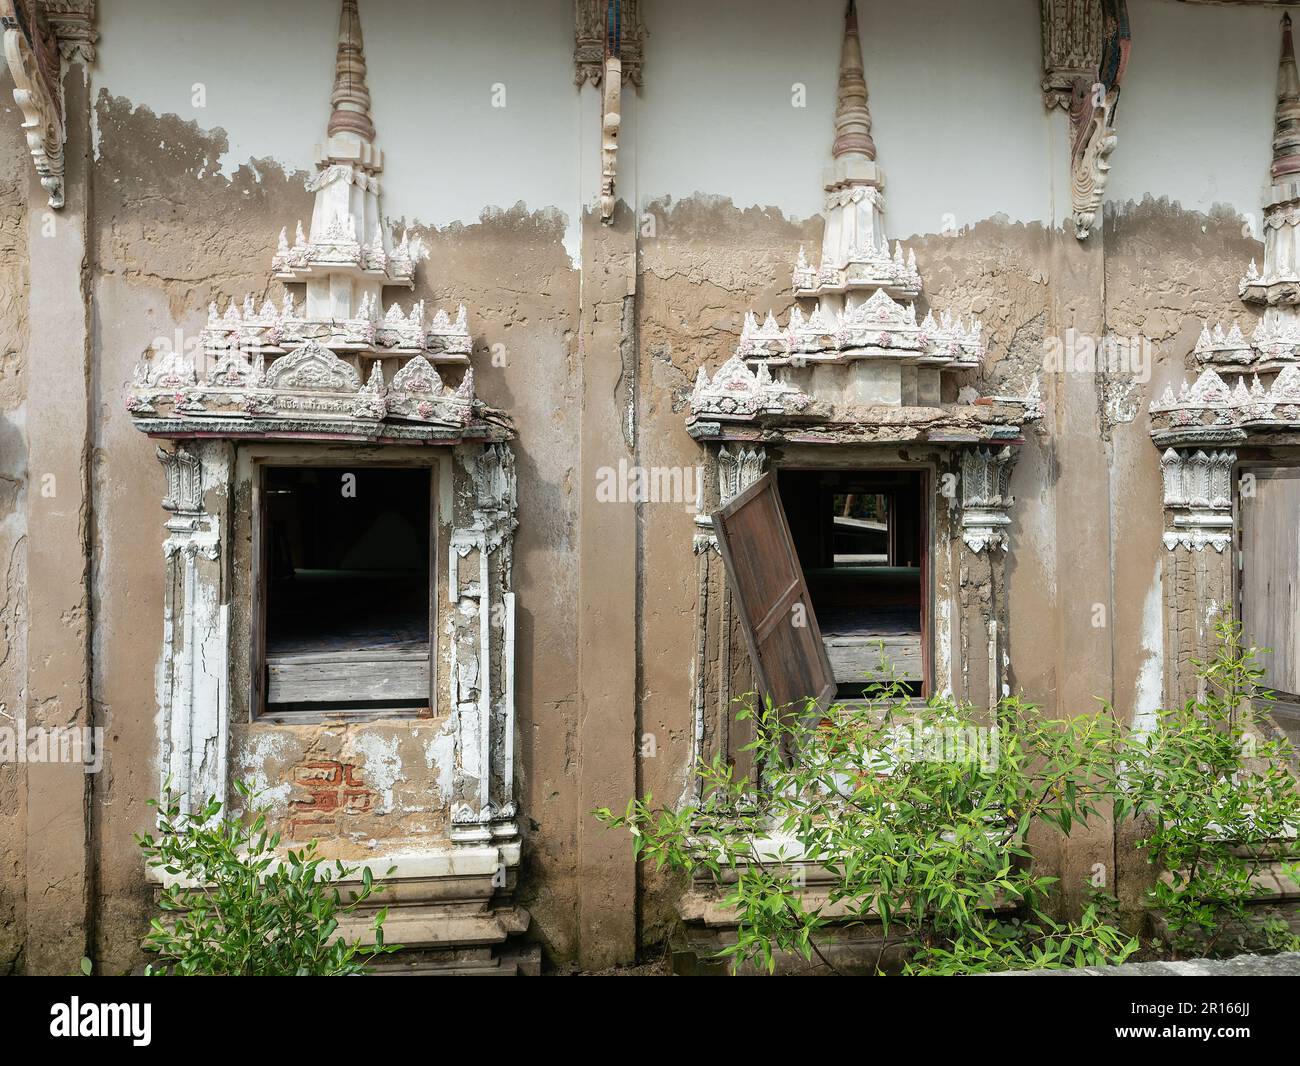 Wat Khun Samut Chin, province de Samut Prakan en Thaïlande. Wat Khun Samut Chin est un temple aujourd'hui situé dans le golfe de Thaïlande, après l'érosion enlevée Banque D'Images